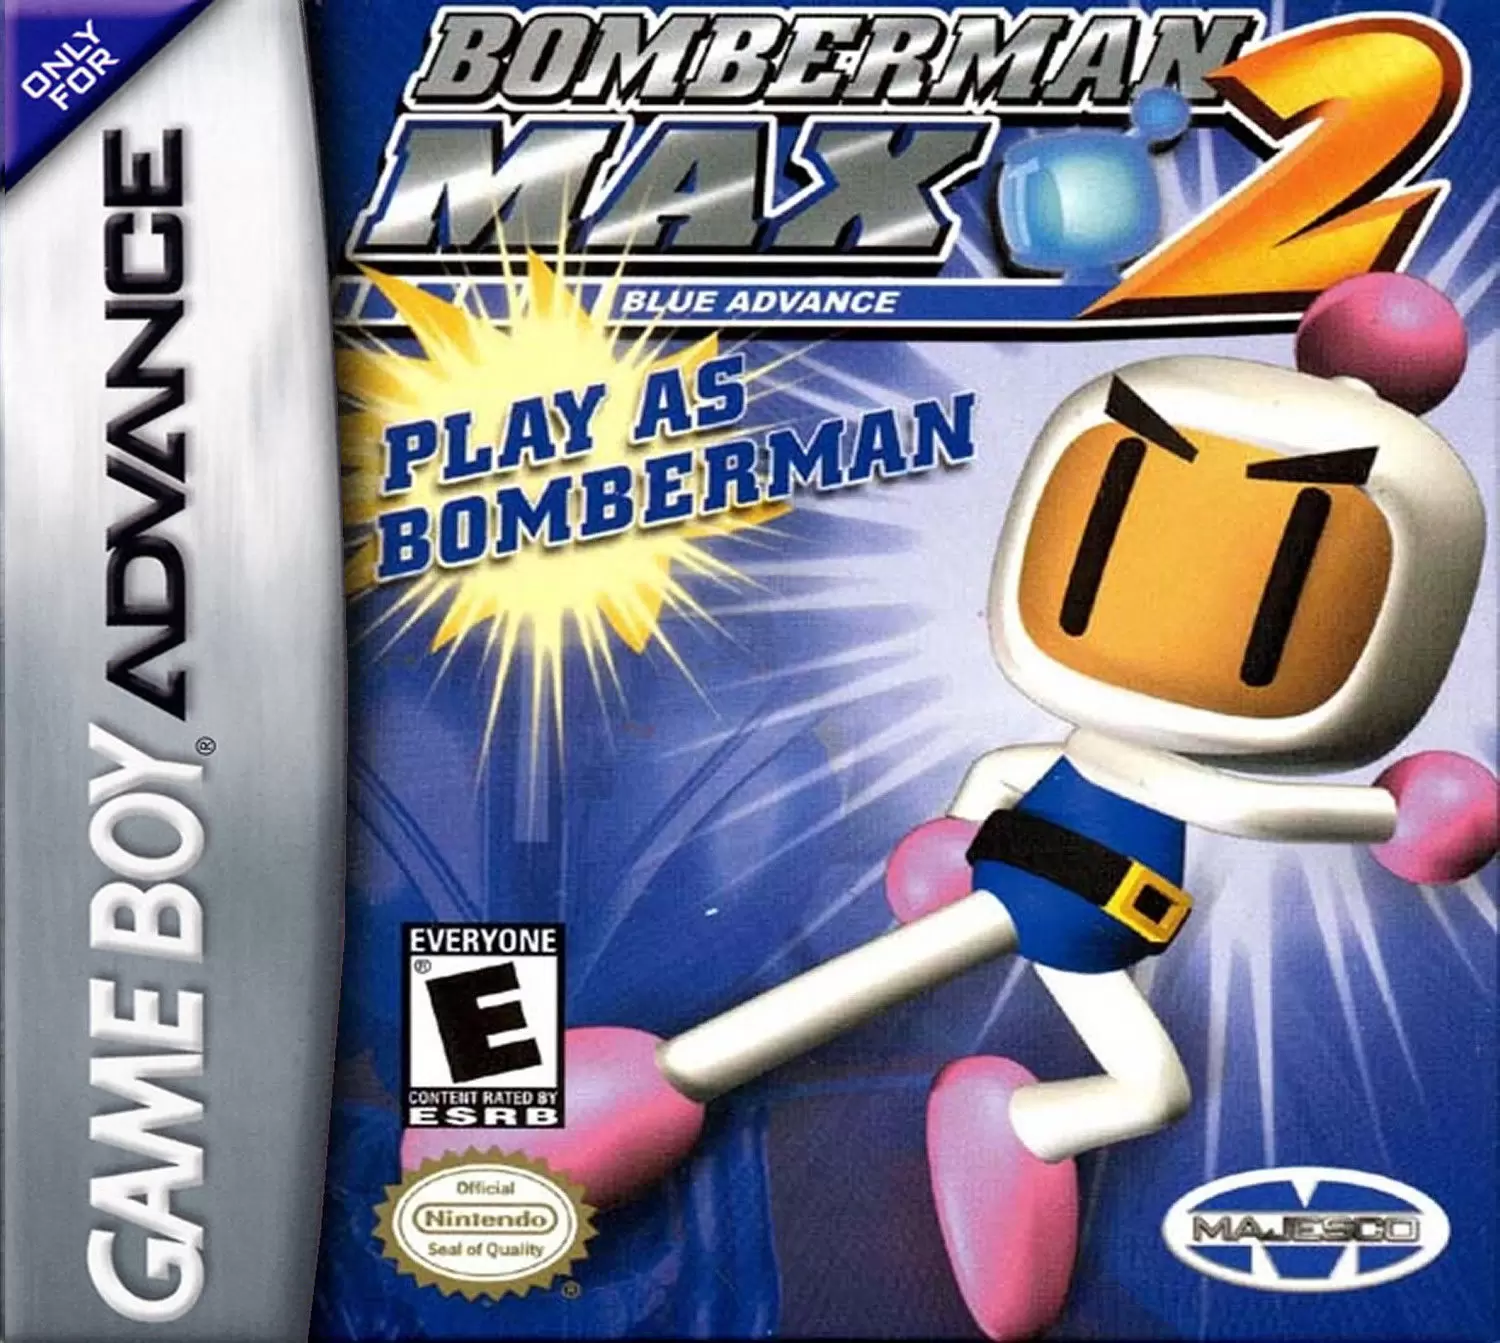 Game Boy Advance Games - Bomberman Max 2: Blue Advance